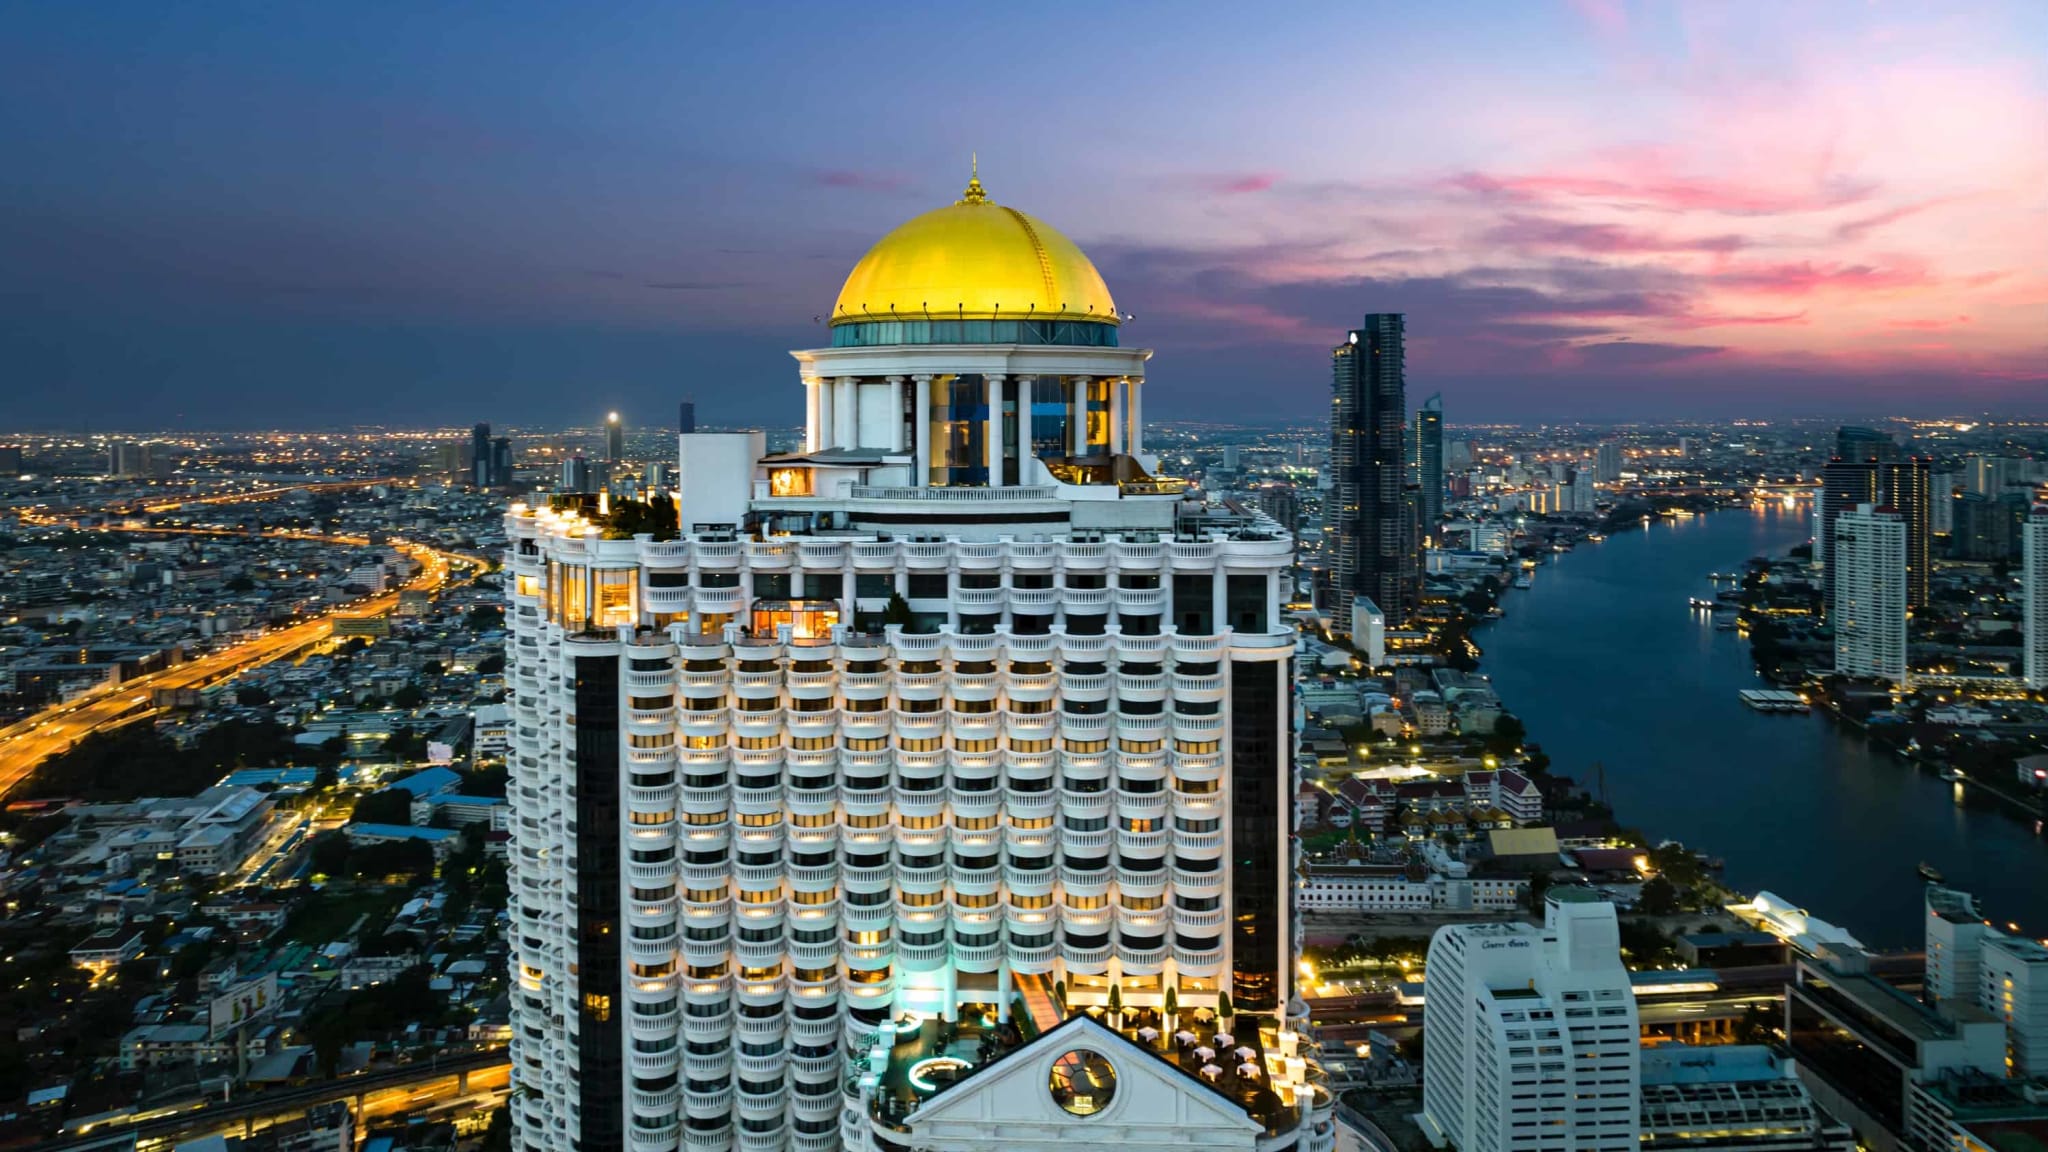 Hotel Tower Club At Lebua, Bangkok